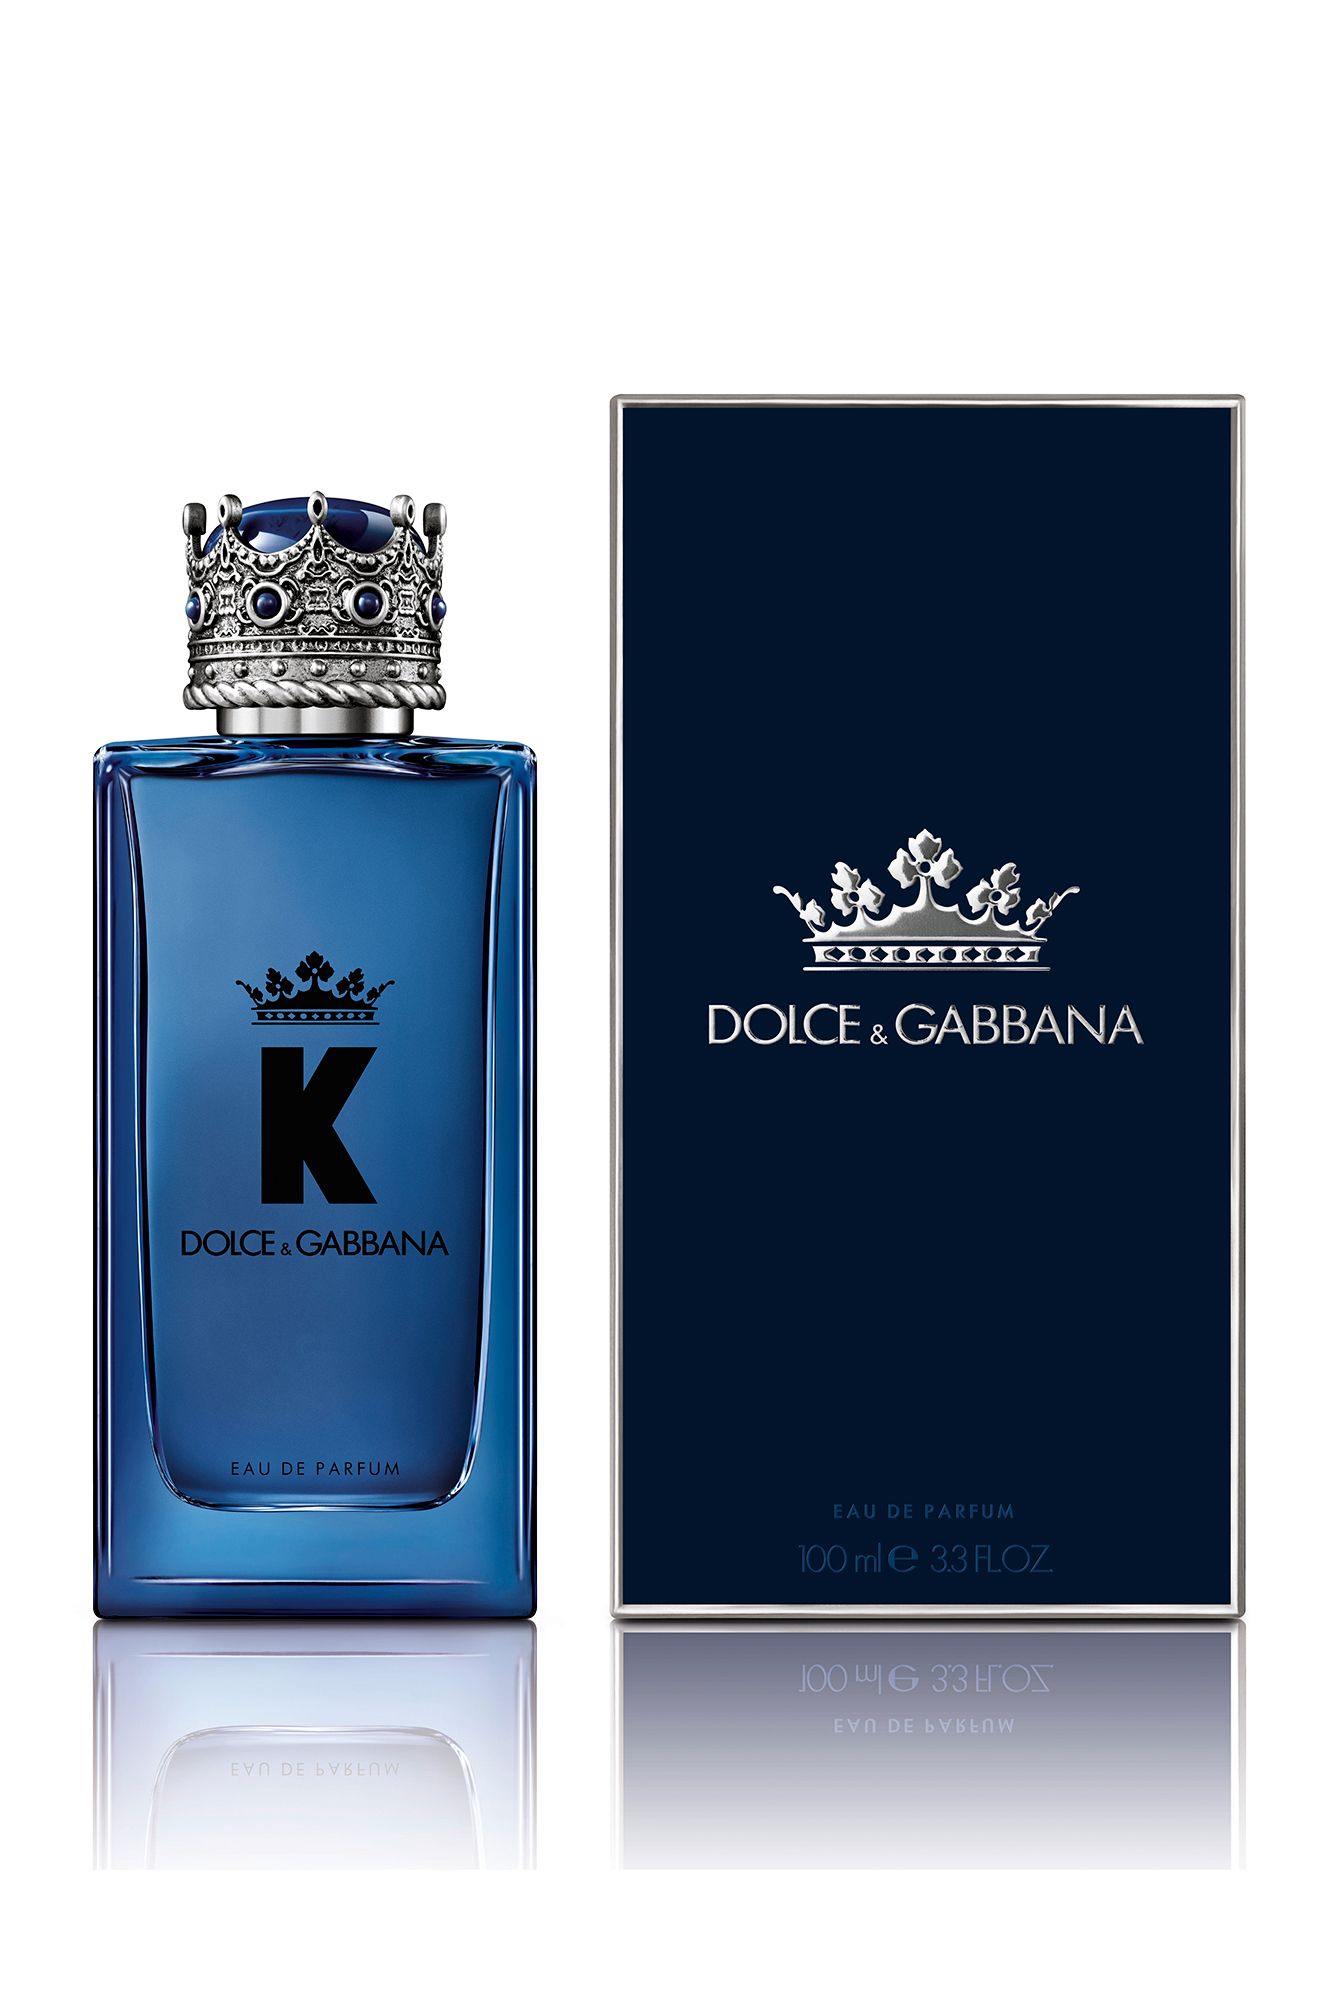 Дольче габбана духи мужские с короной. Dolce Gabbana King 100ml. Dolce & Gabbana King Eau de Parfum 100 ml. Dolce Gabbana k 100ml. Dolce&Gabbana k (m) 100ml EDT.